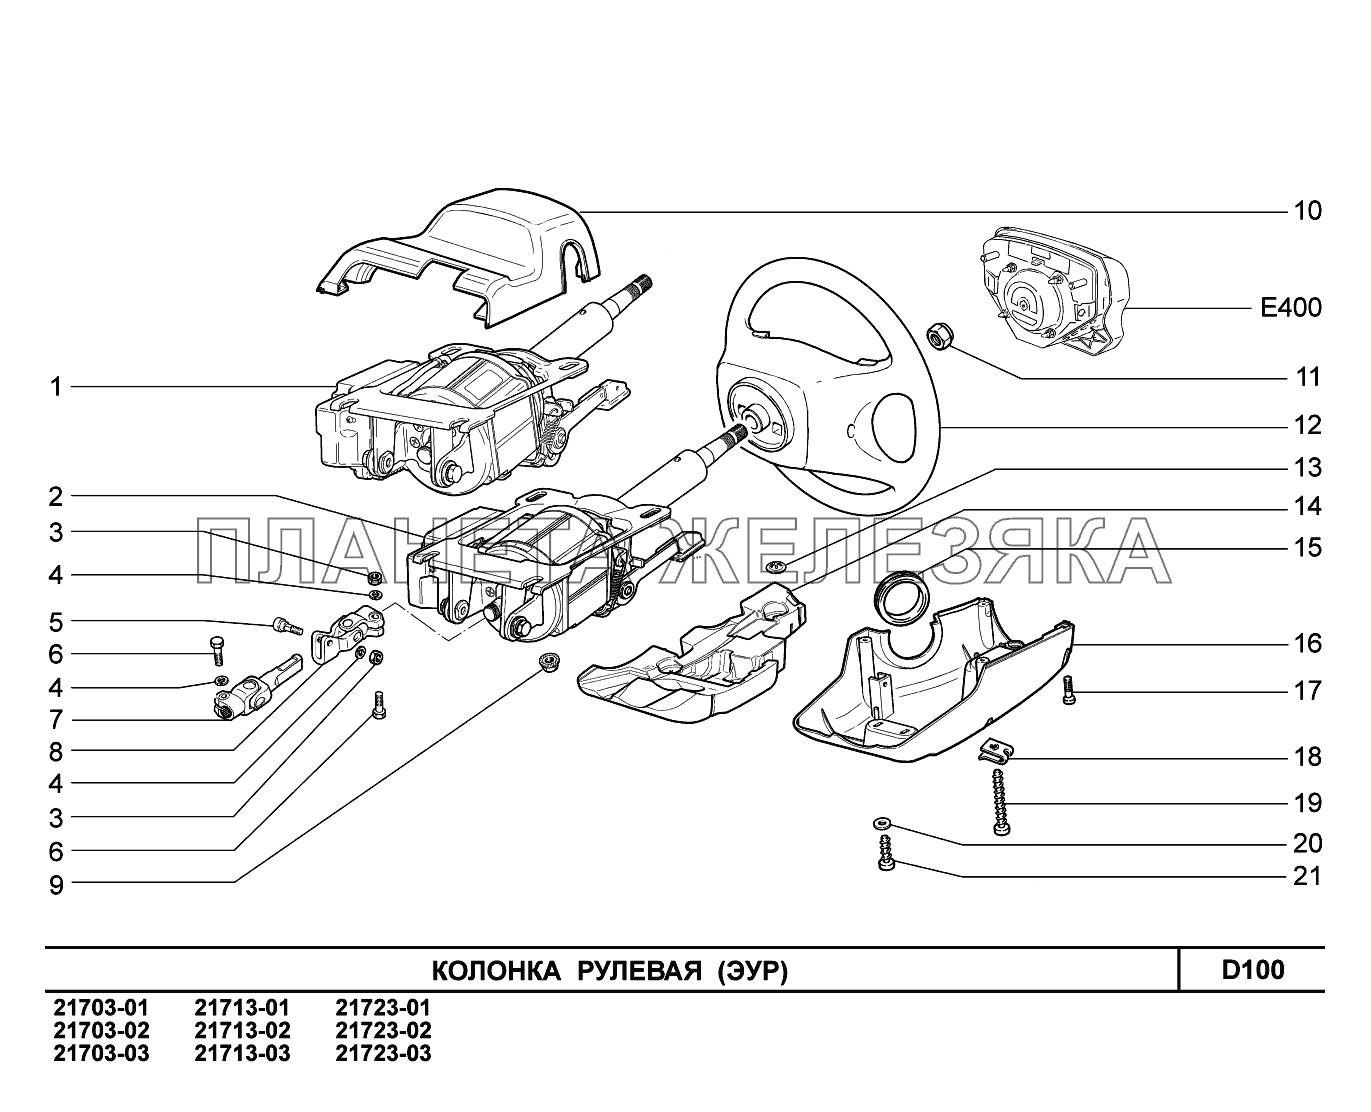 D100. Колонка рулевая ВАЗ-2170 